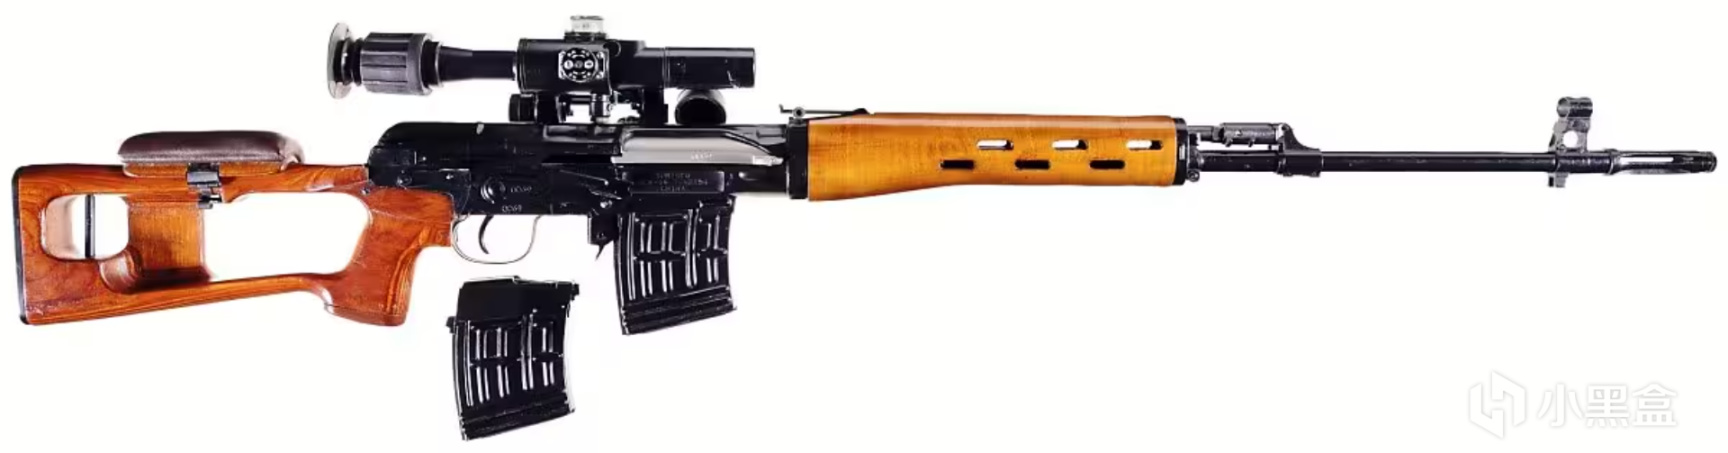 【絕地求生】正在穩步上升的狙擊槍新星 - 德拉貢諾夫狙擊步槍SVD-第2張